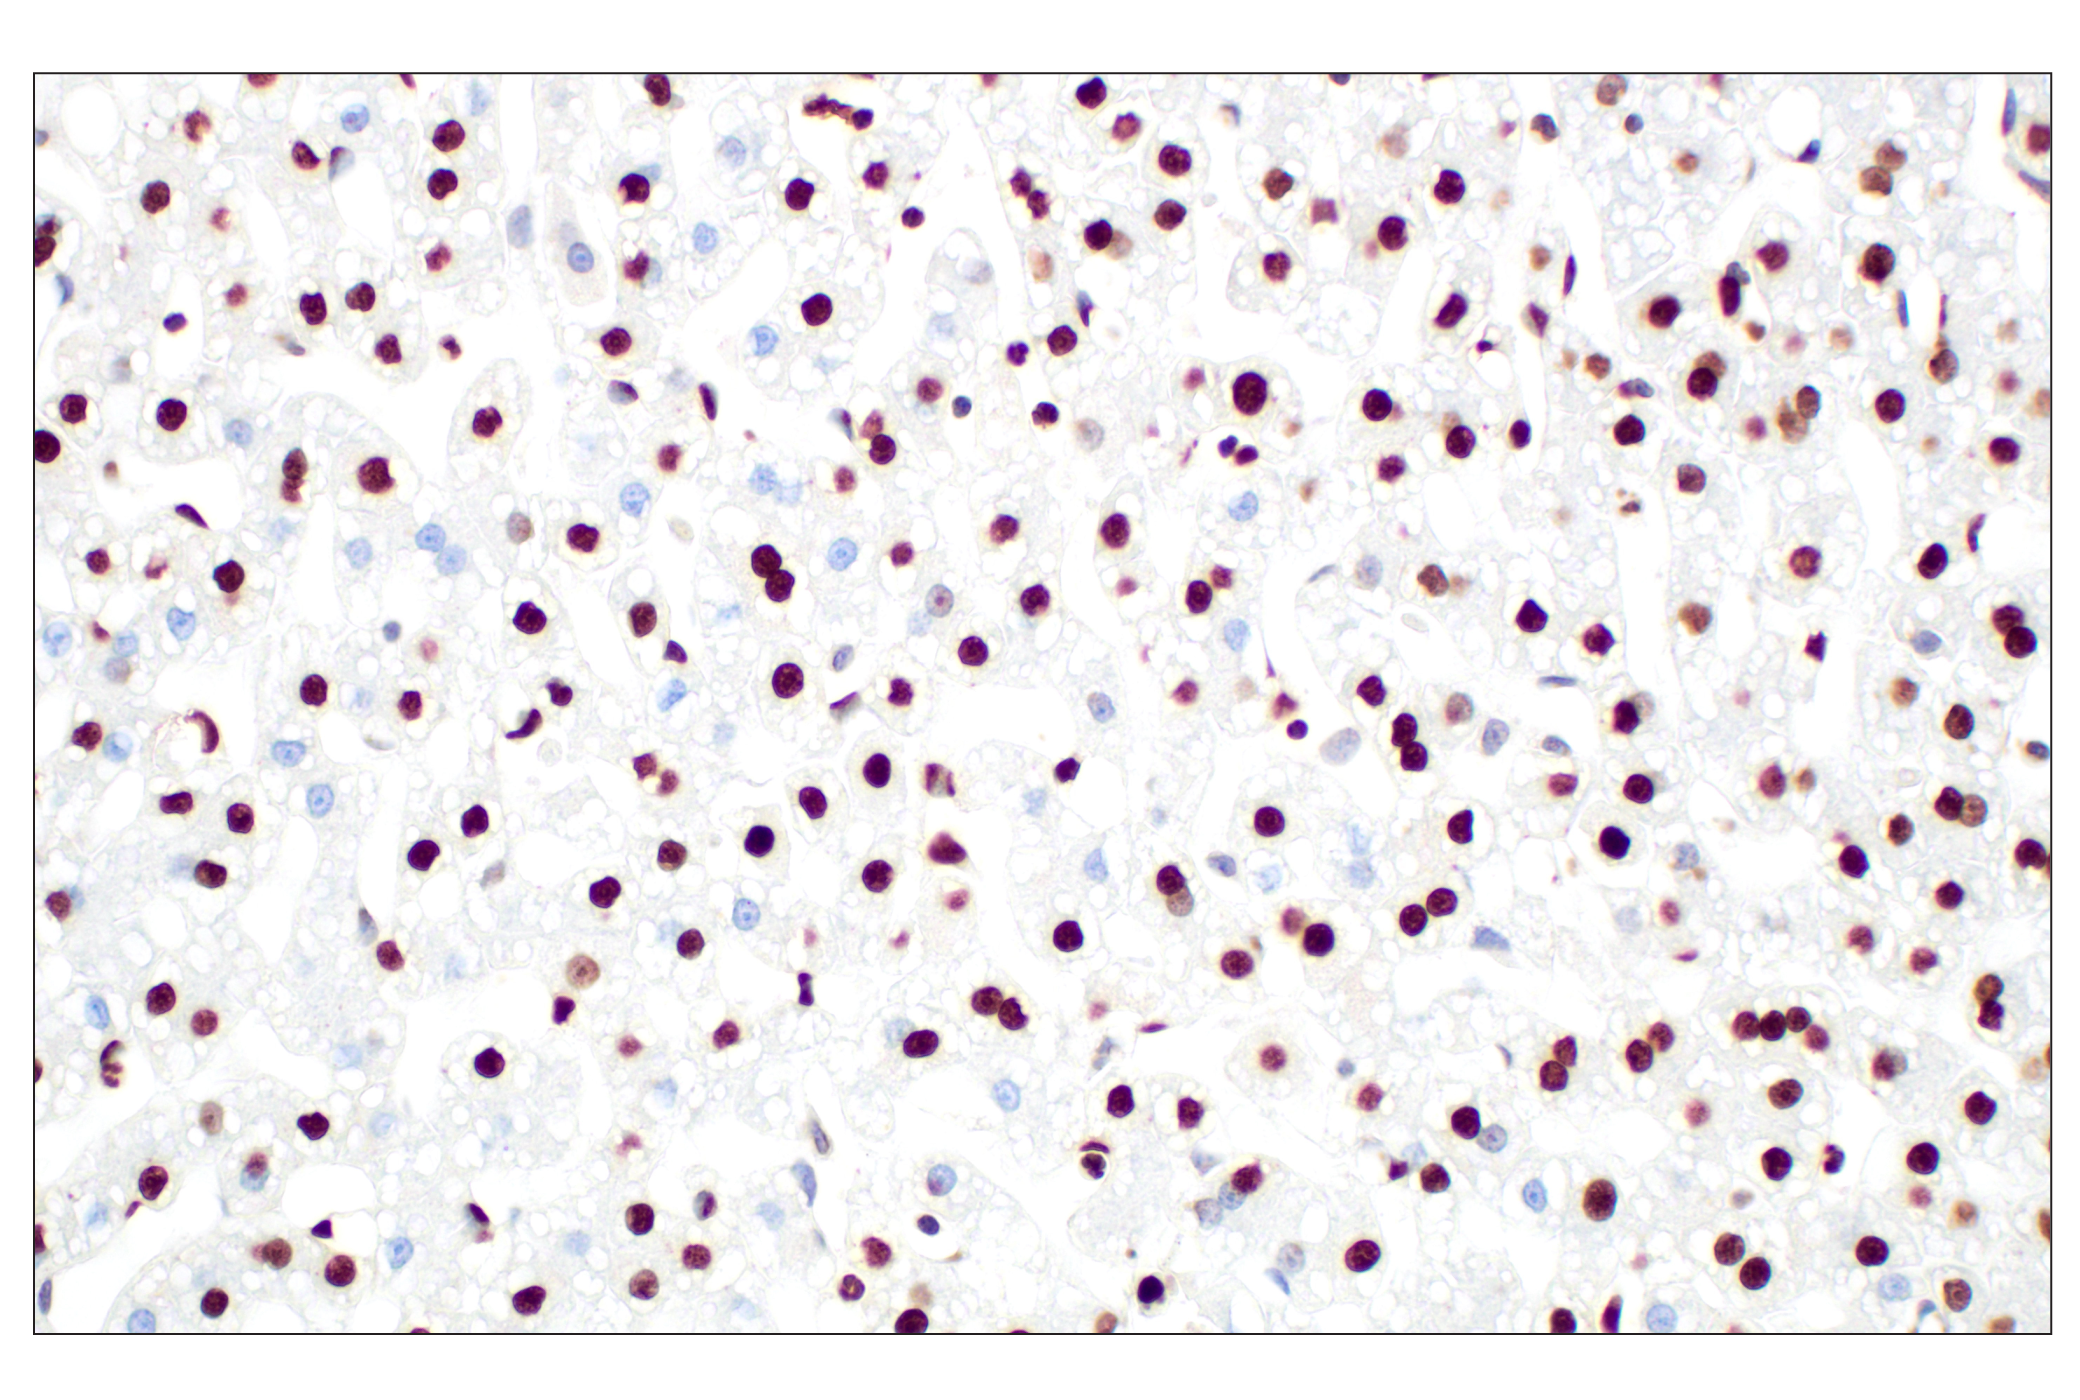  Image 21: Methyl-Histone H3 (Lys27) Antibody Sampler Kit